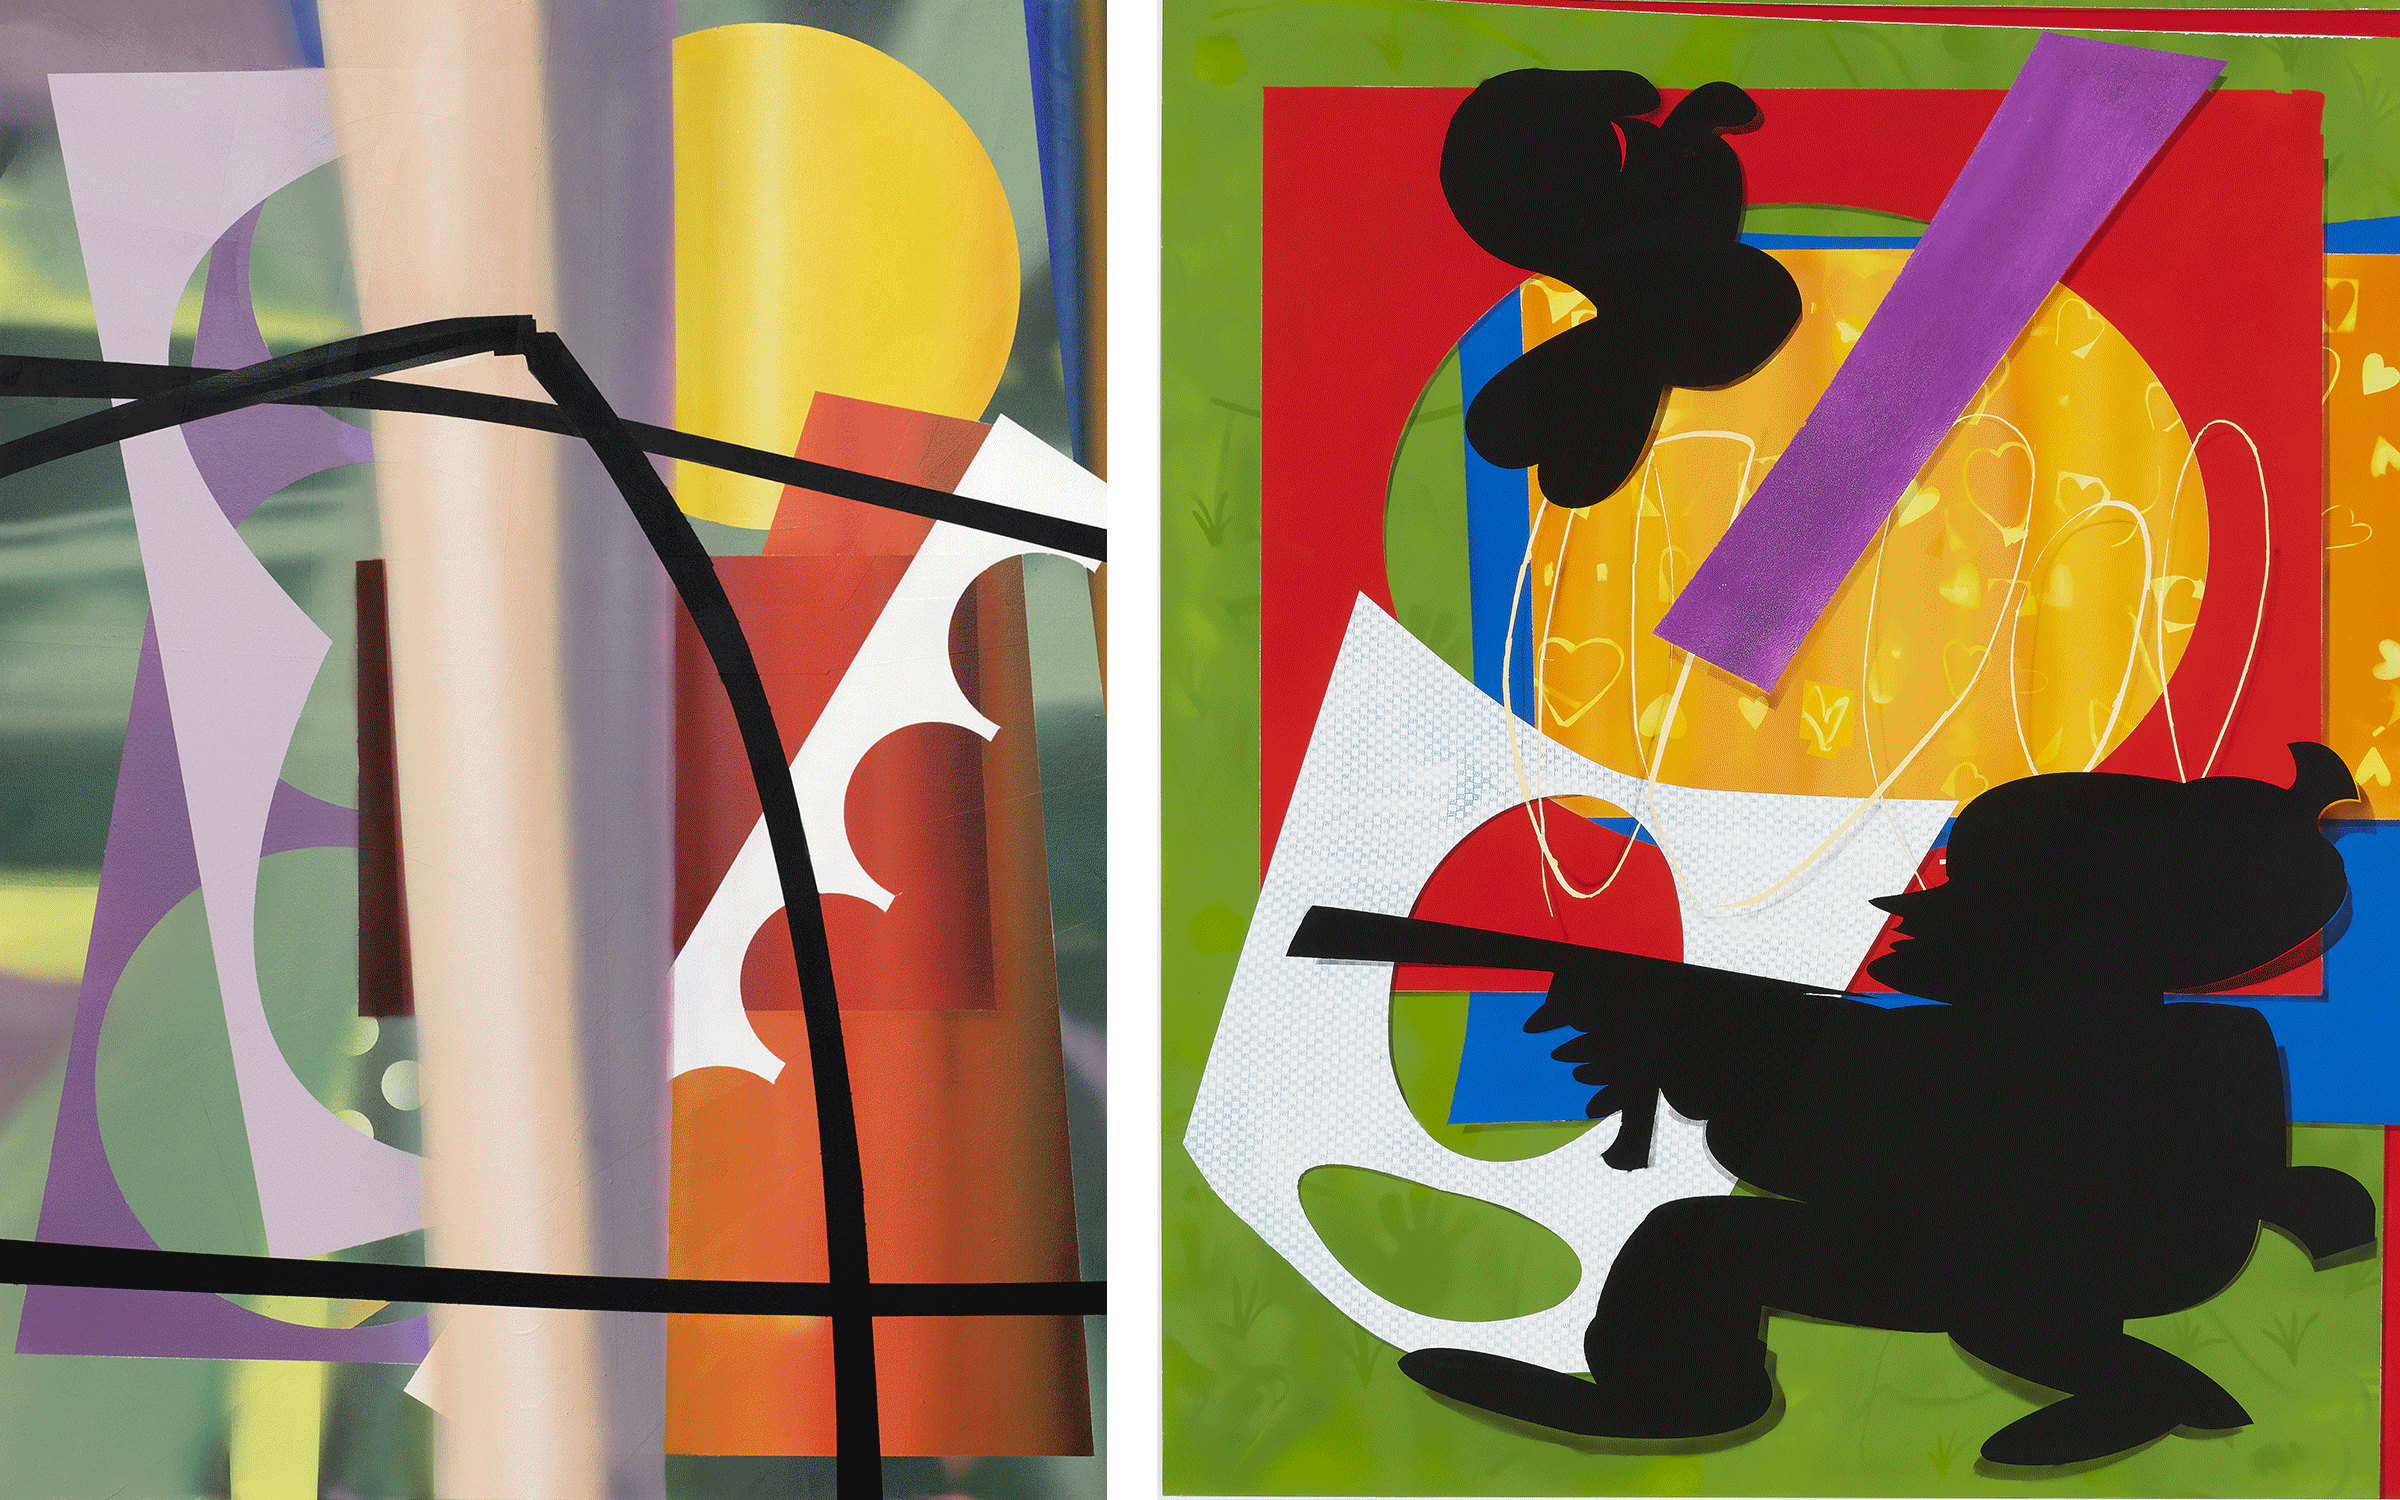 左：回归的太阳将身体融为一体，2021年。摄影：Aurélien Mole。右图：狩猎场上的兔子，2019年。摄影：We Document Art。两件作品均出自穗田柏叶之手。由艺术家和Nathalie Obadia画廊提供。